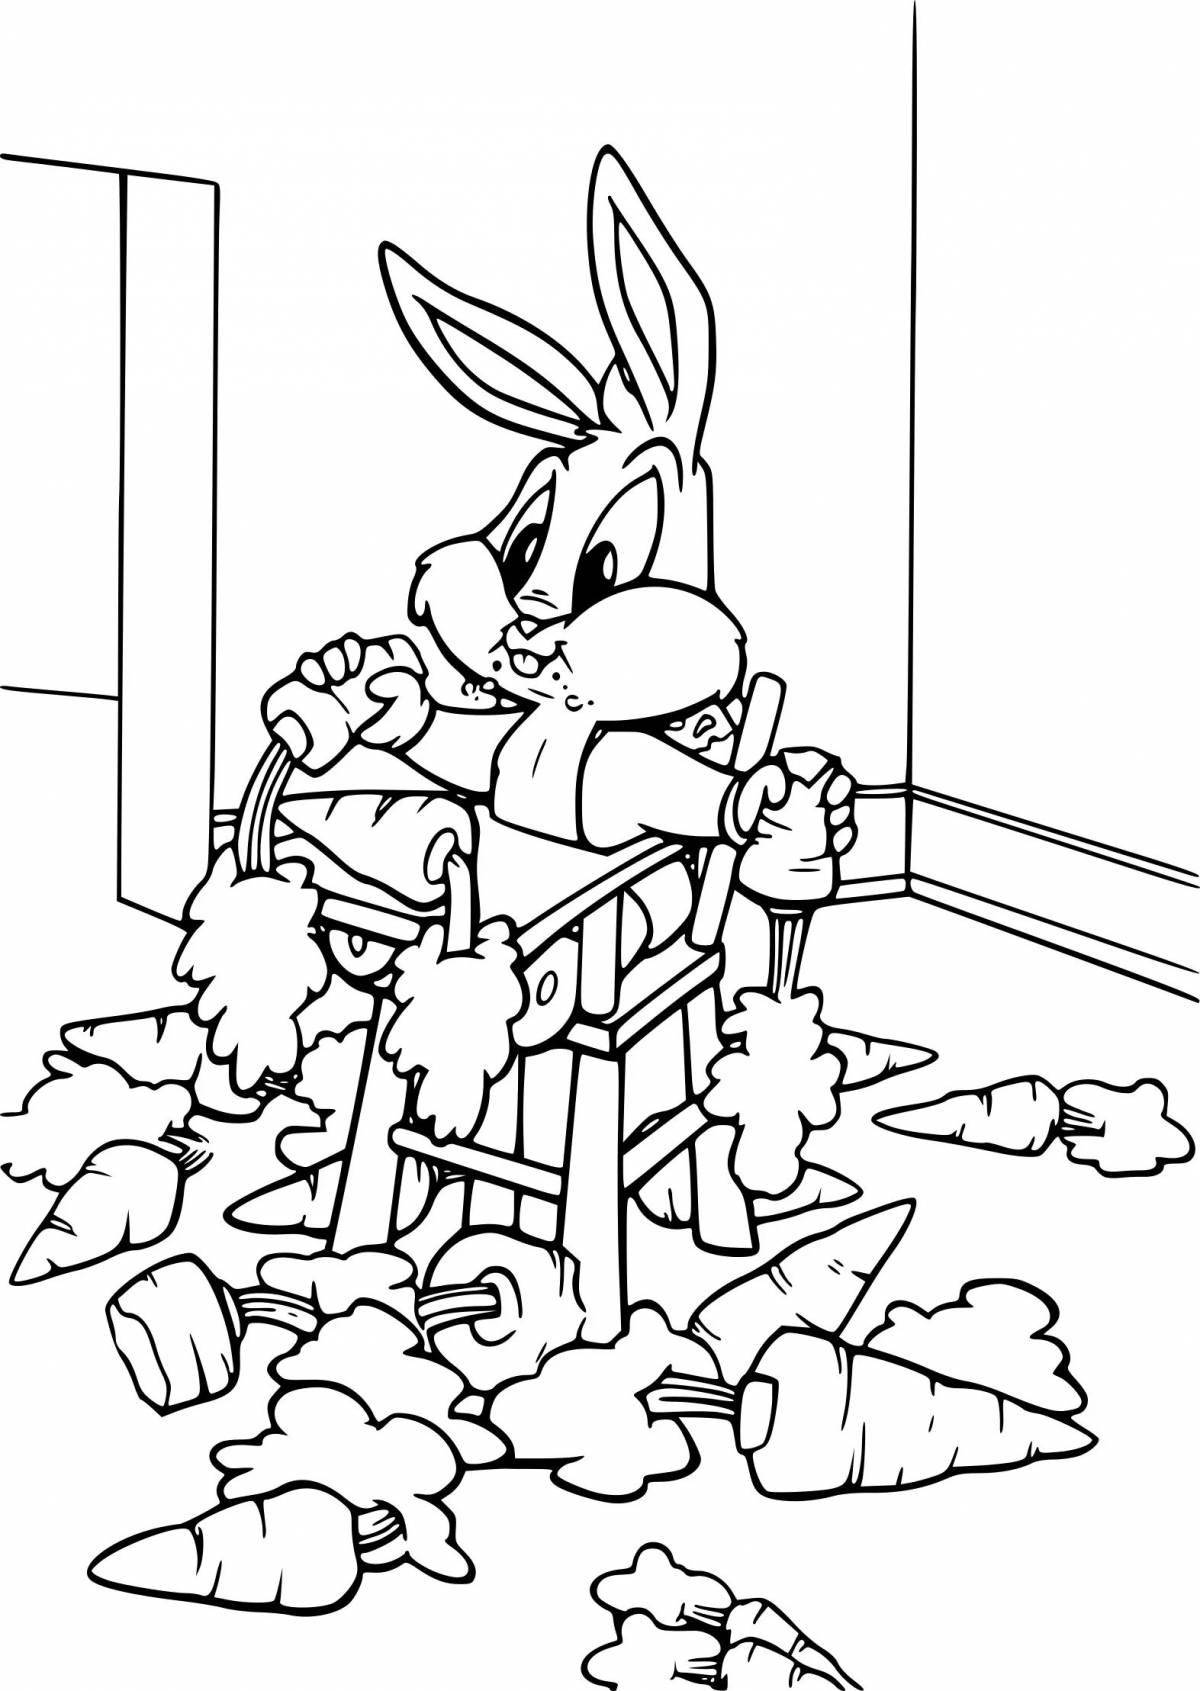 Alert coloring book bunny bunny